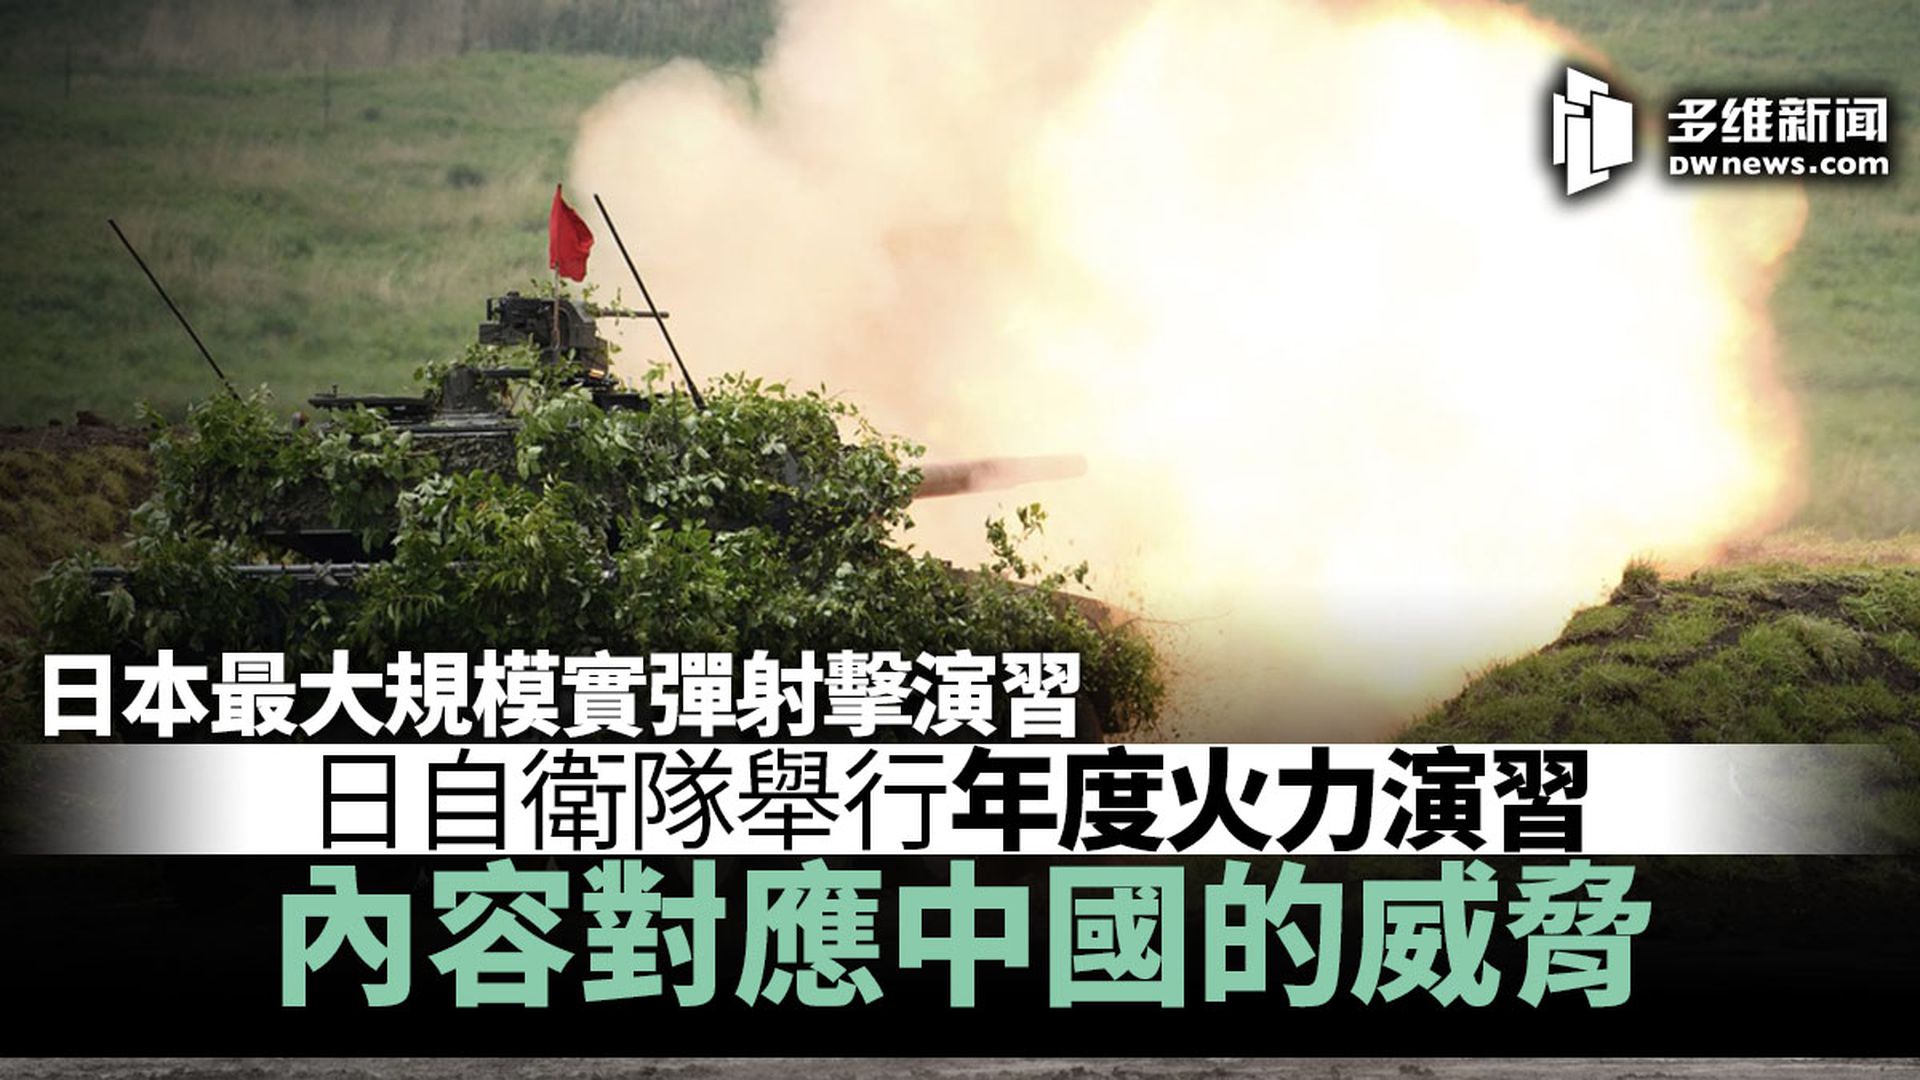 日本陆上自卫队举行年度火力演习拟新增第三支离岛作战部队 多维新闻 全球